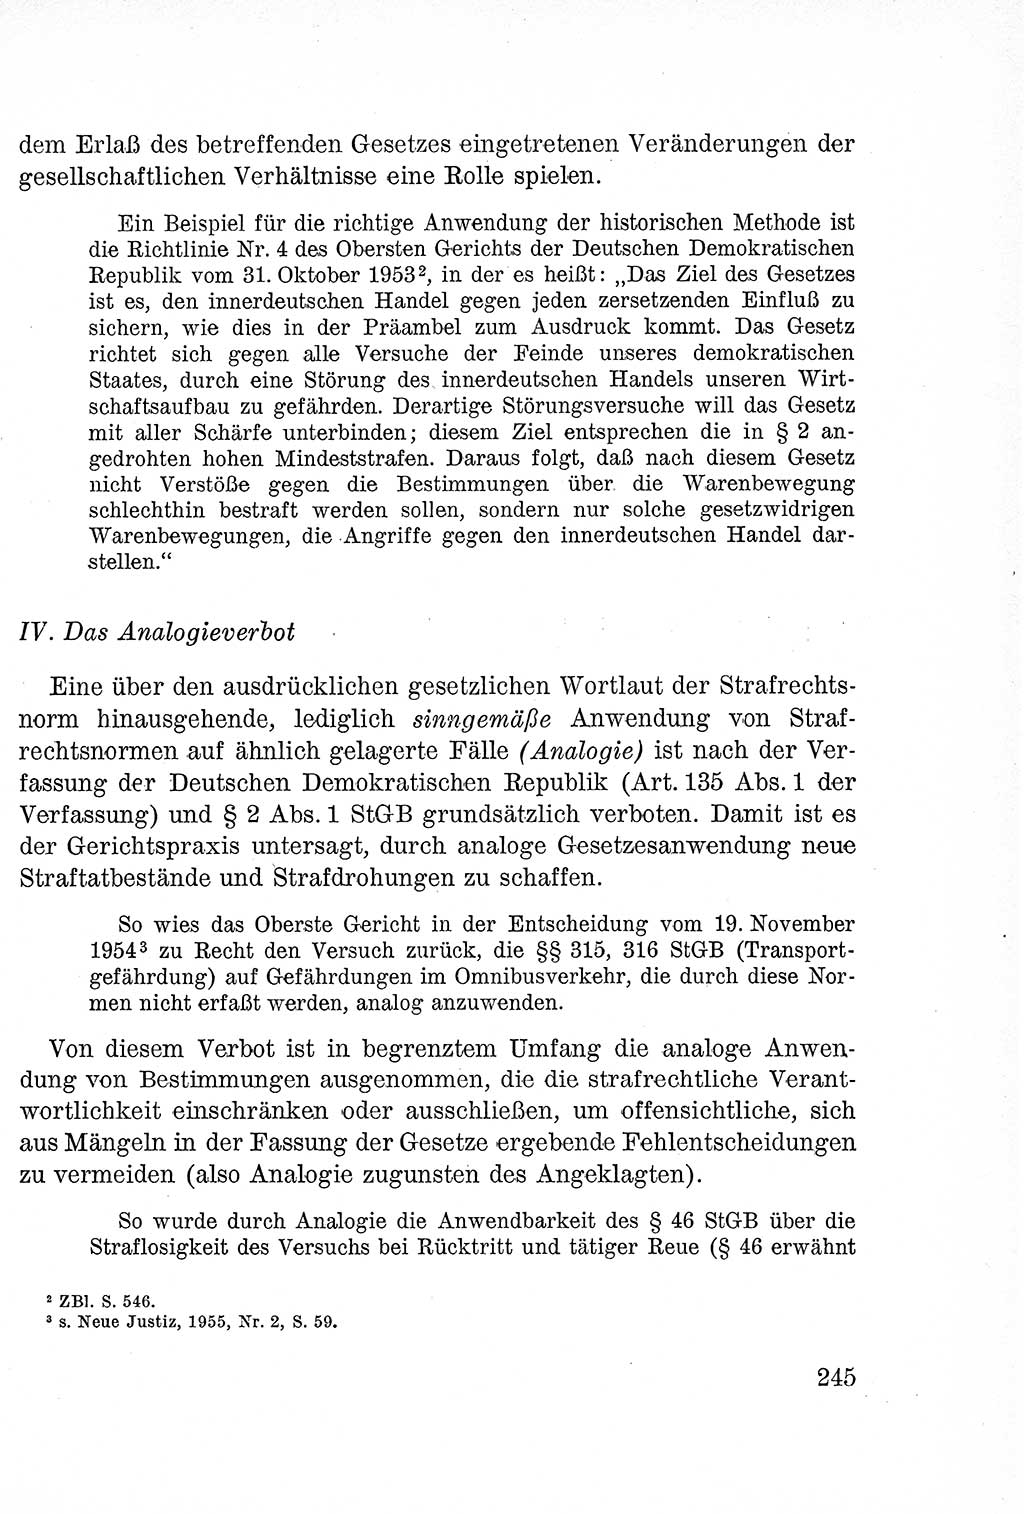 Lehrbuch des Strafrechts der Deutschen Demokratischen Republik (DDR), Allgemeiner Teil 1957, Seite 245 (Lb. Strafr. DDR AT 1957, S. 245)